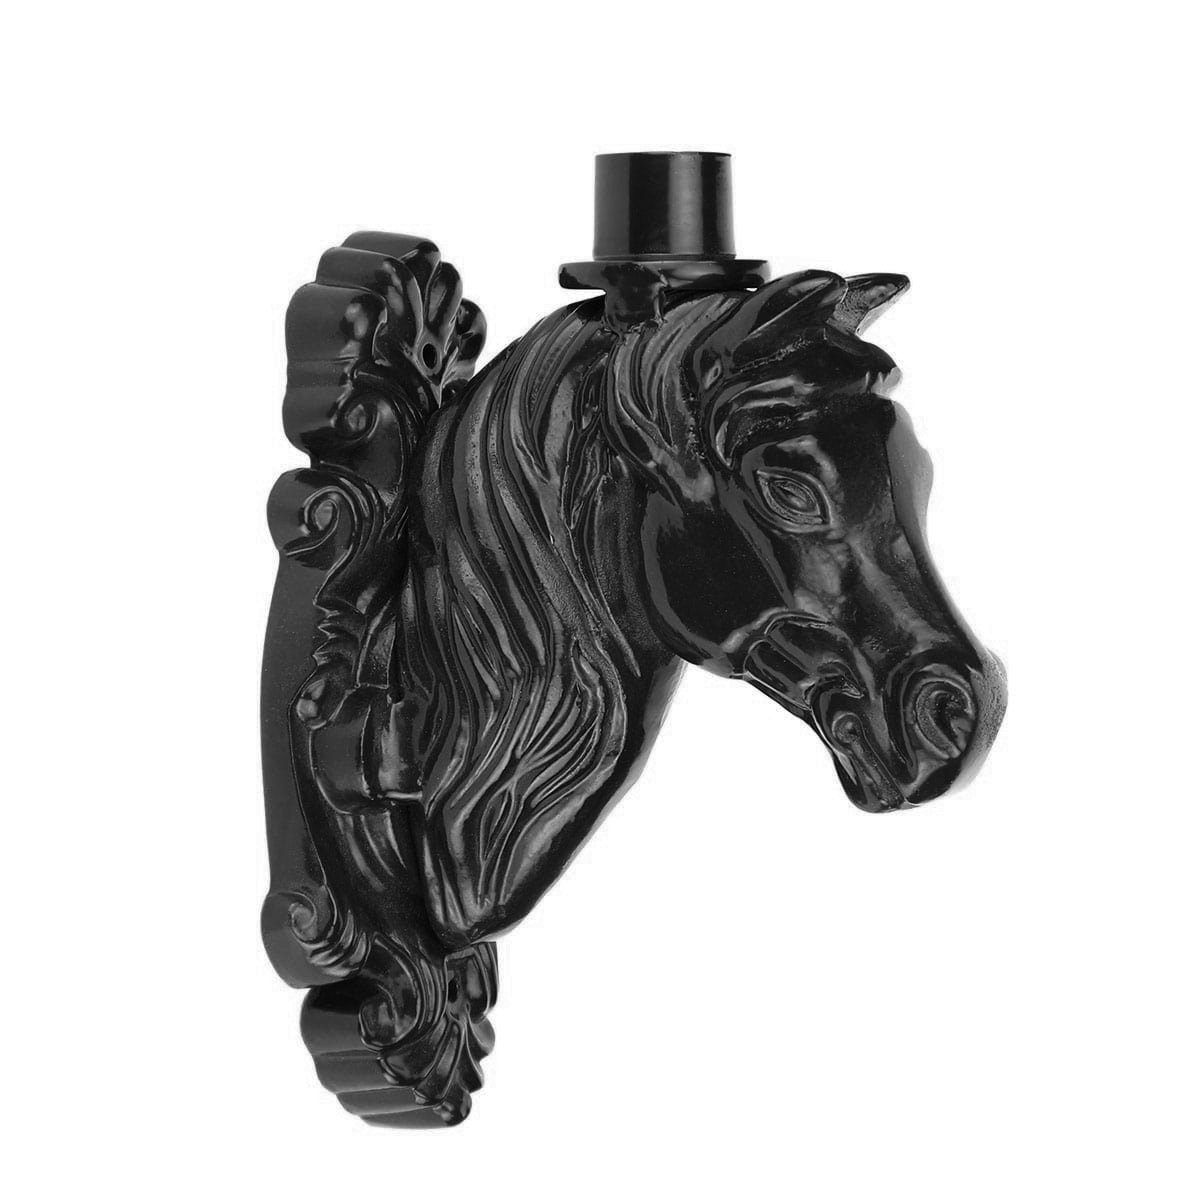 Buitenverlichting Klassiek Landelijk Wandsteun Paard ornament WA73 - 32 cm